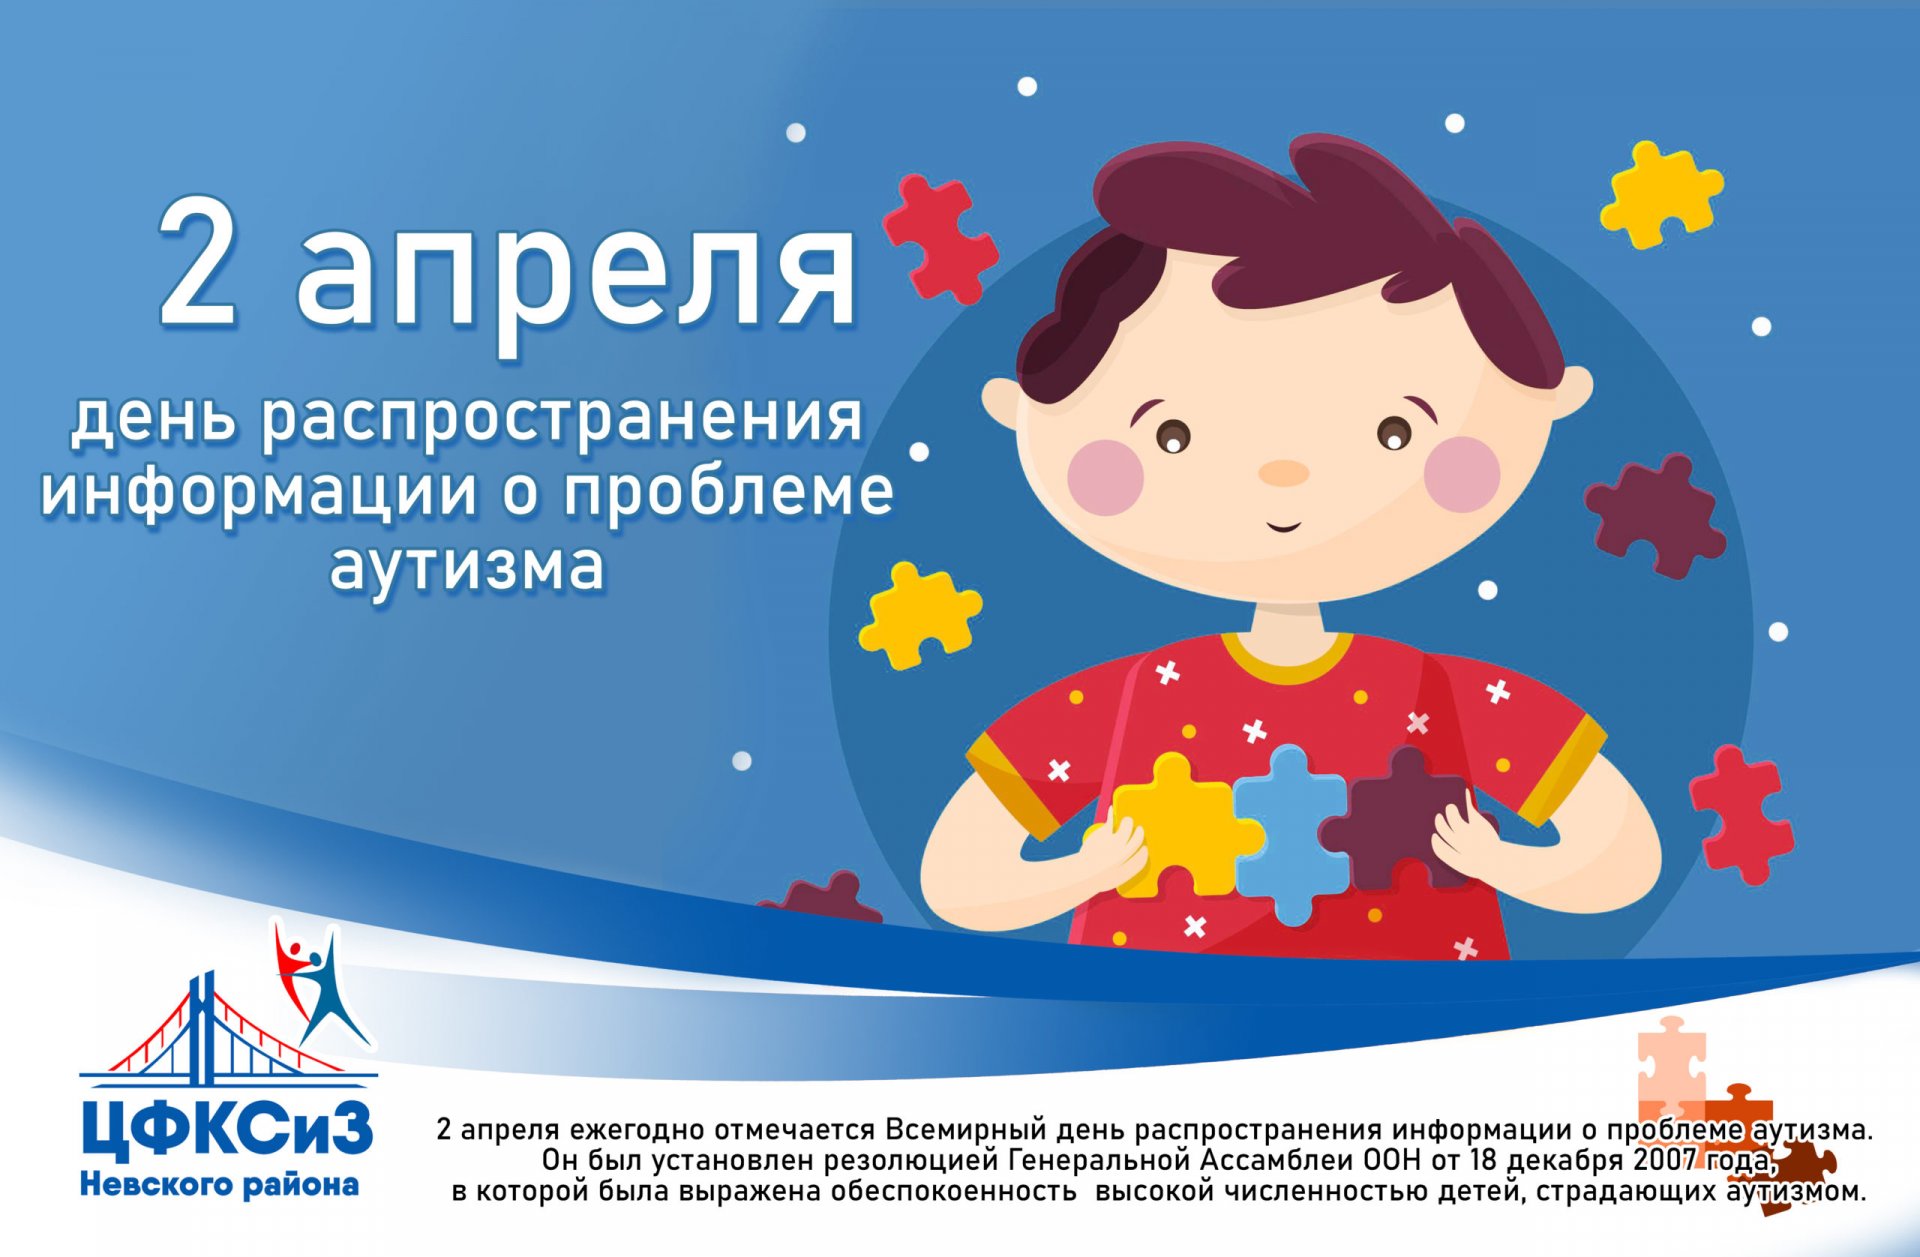 Всероссийская неделя распространения информации об аутизме проходила с 28 марта по 2 апреля 2023 года..